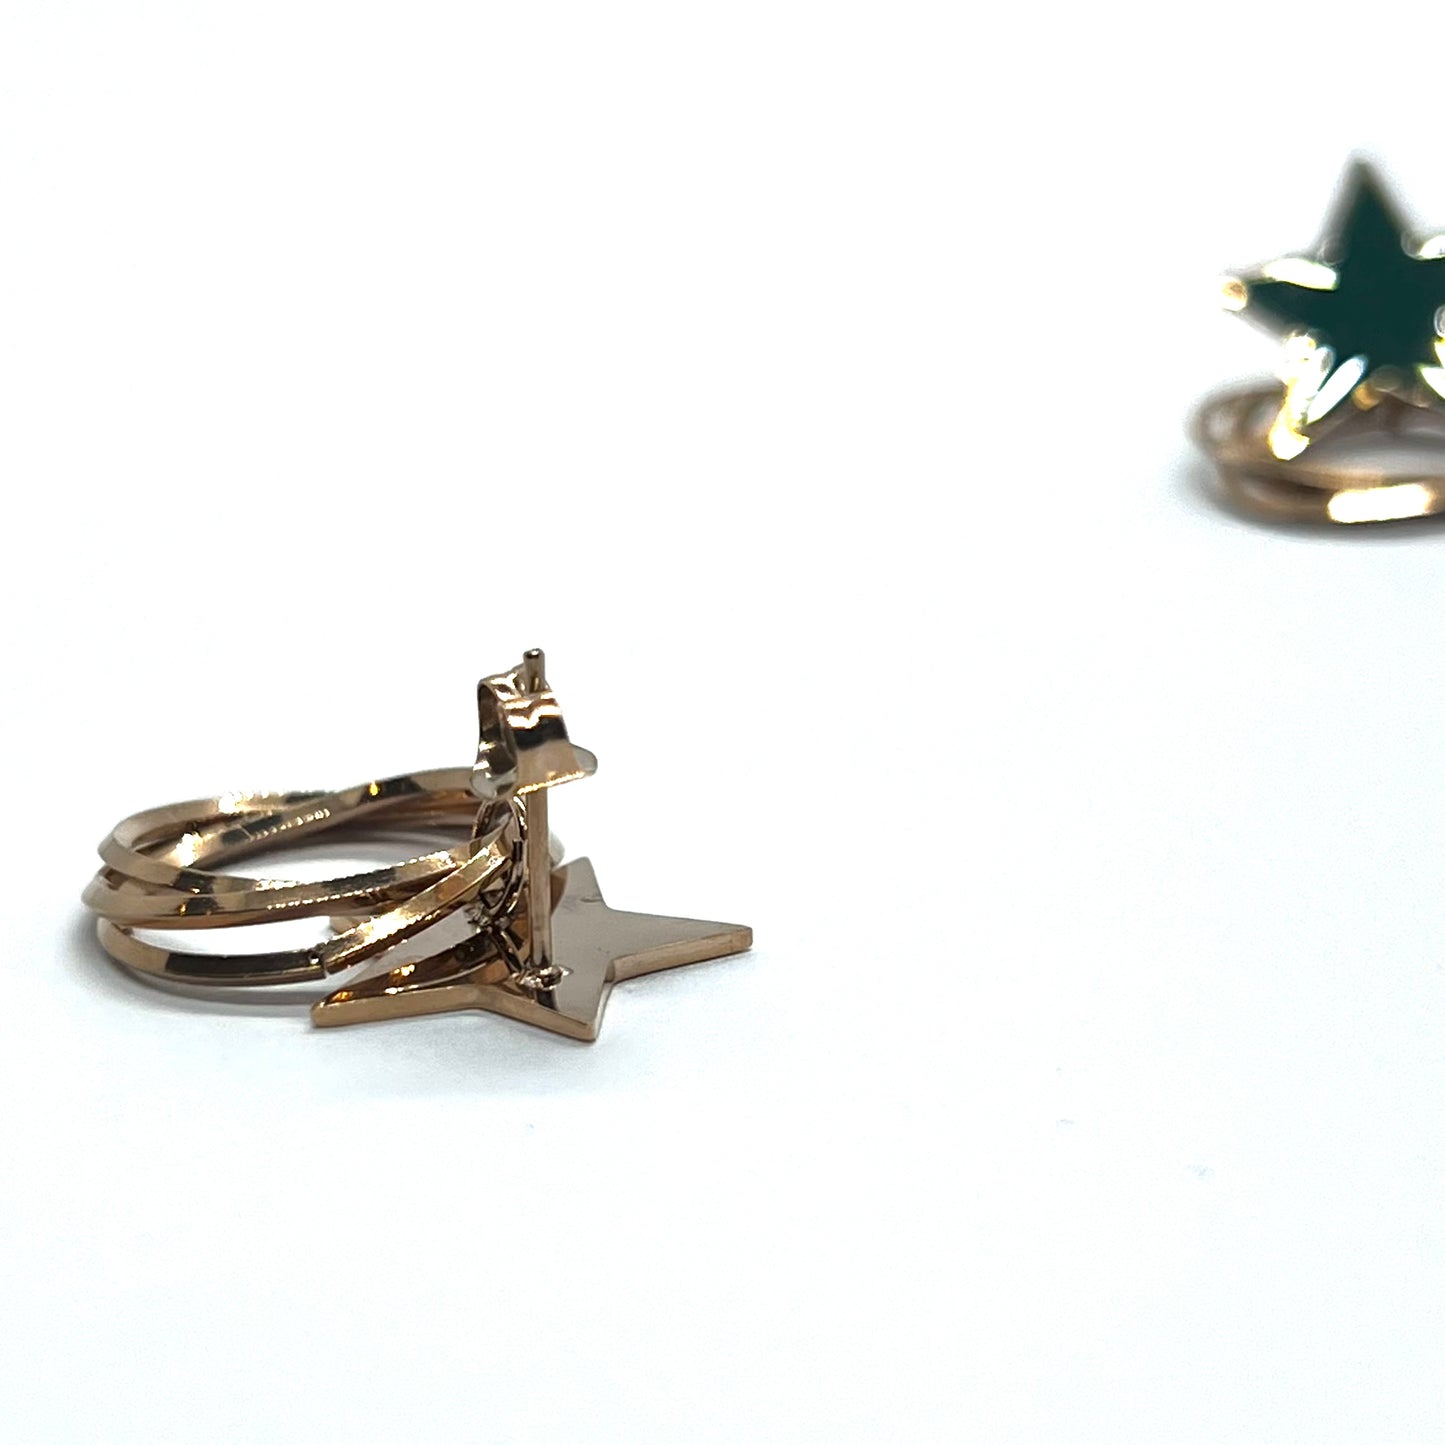 Green Star Golden Rings Earrings